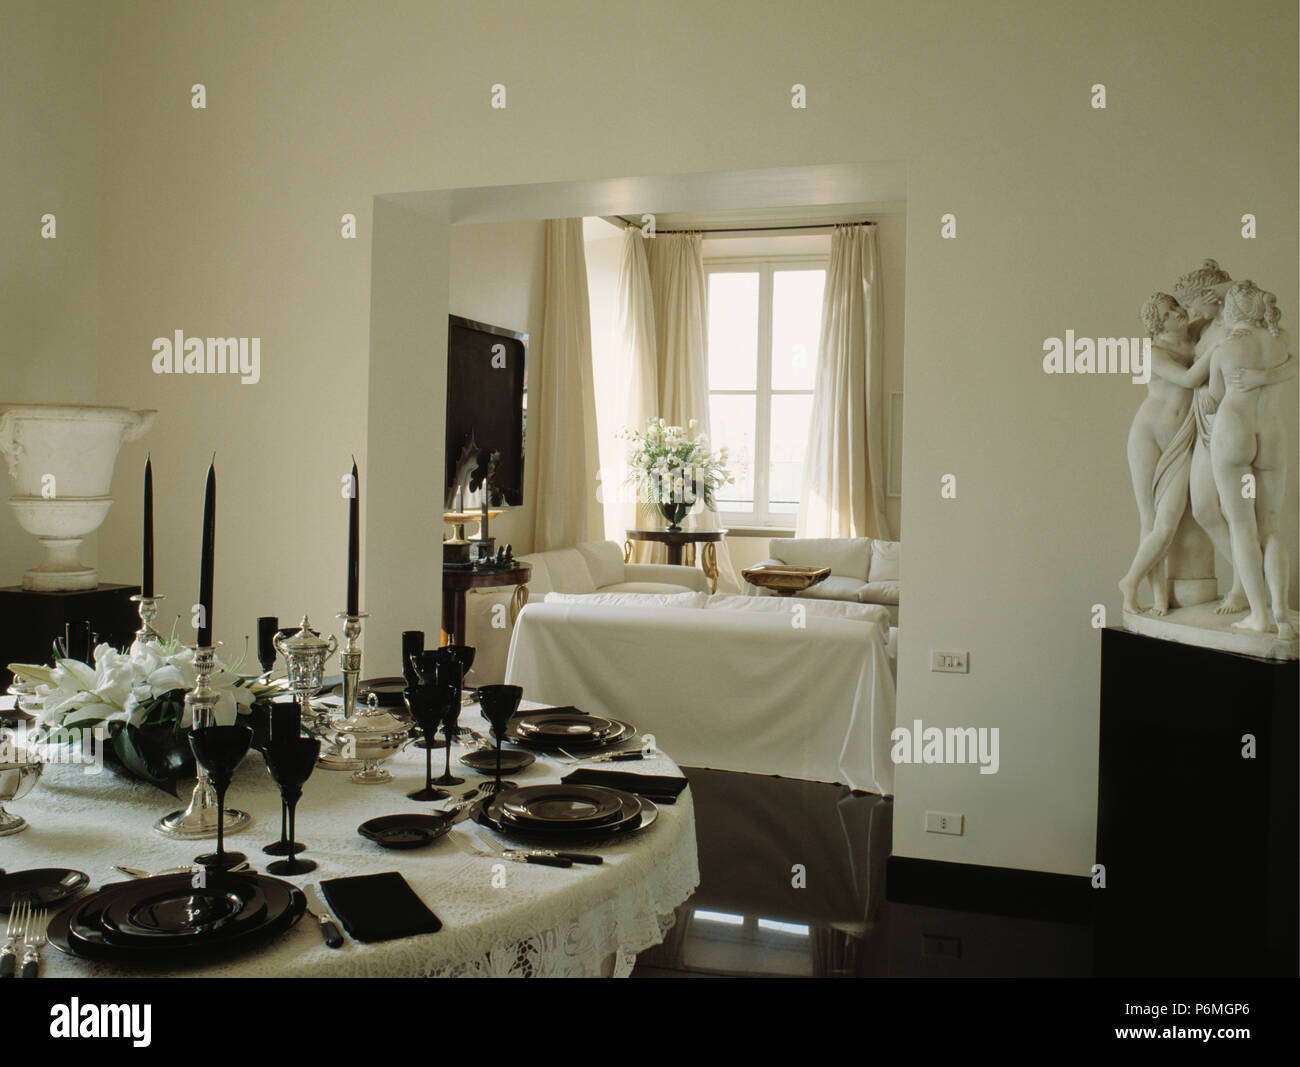 Le piastre nere e occhiali sulla tovaglia bianca in bianco sala da pranzo con statua classica in un angolo della stanza Foto Stock